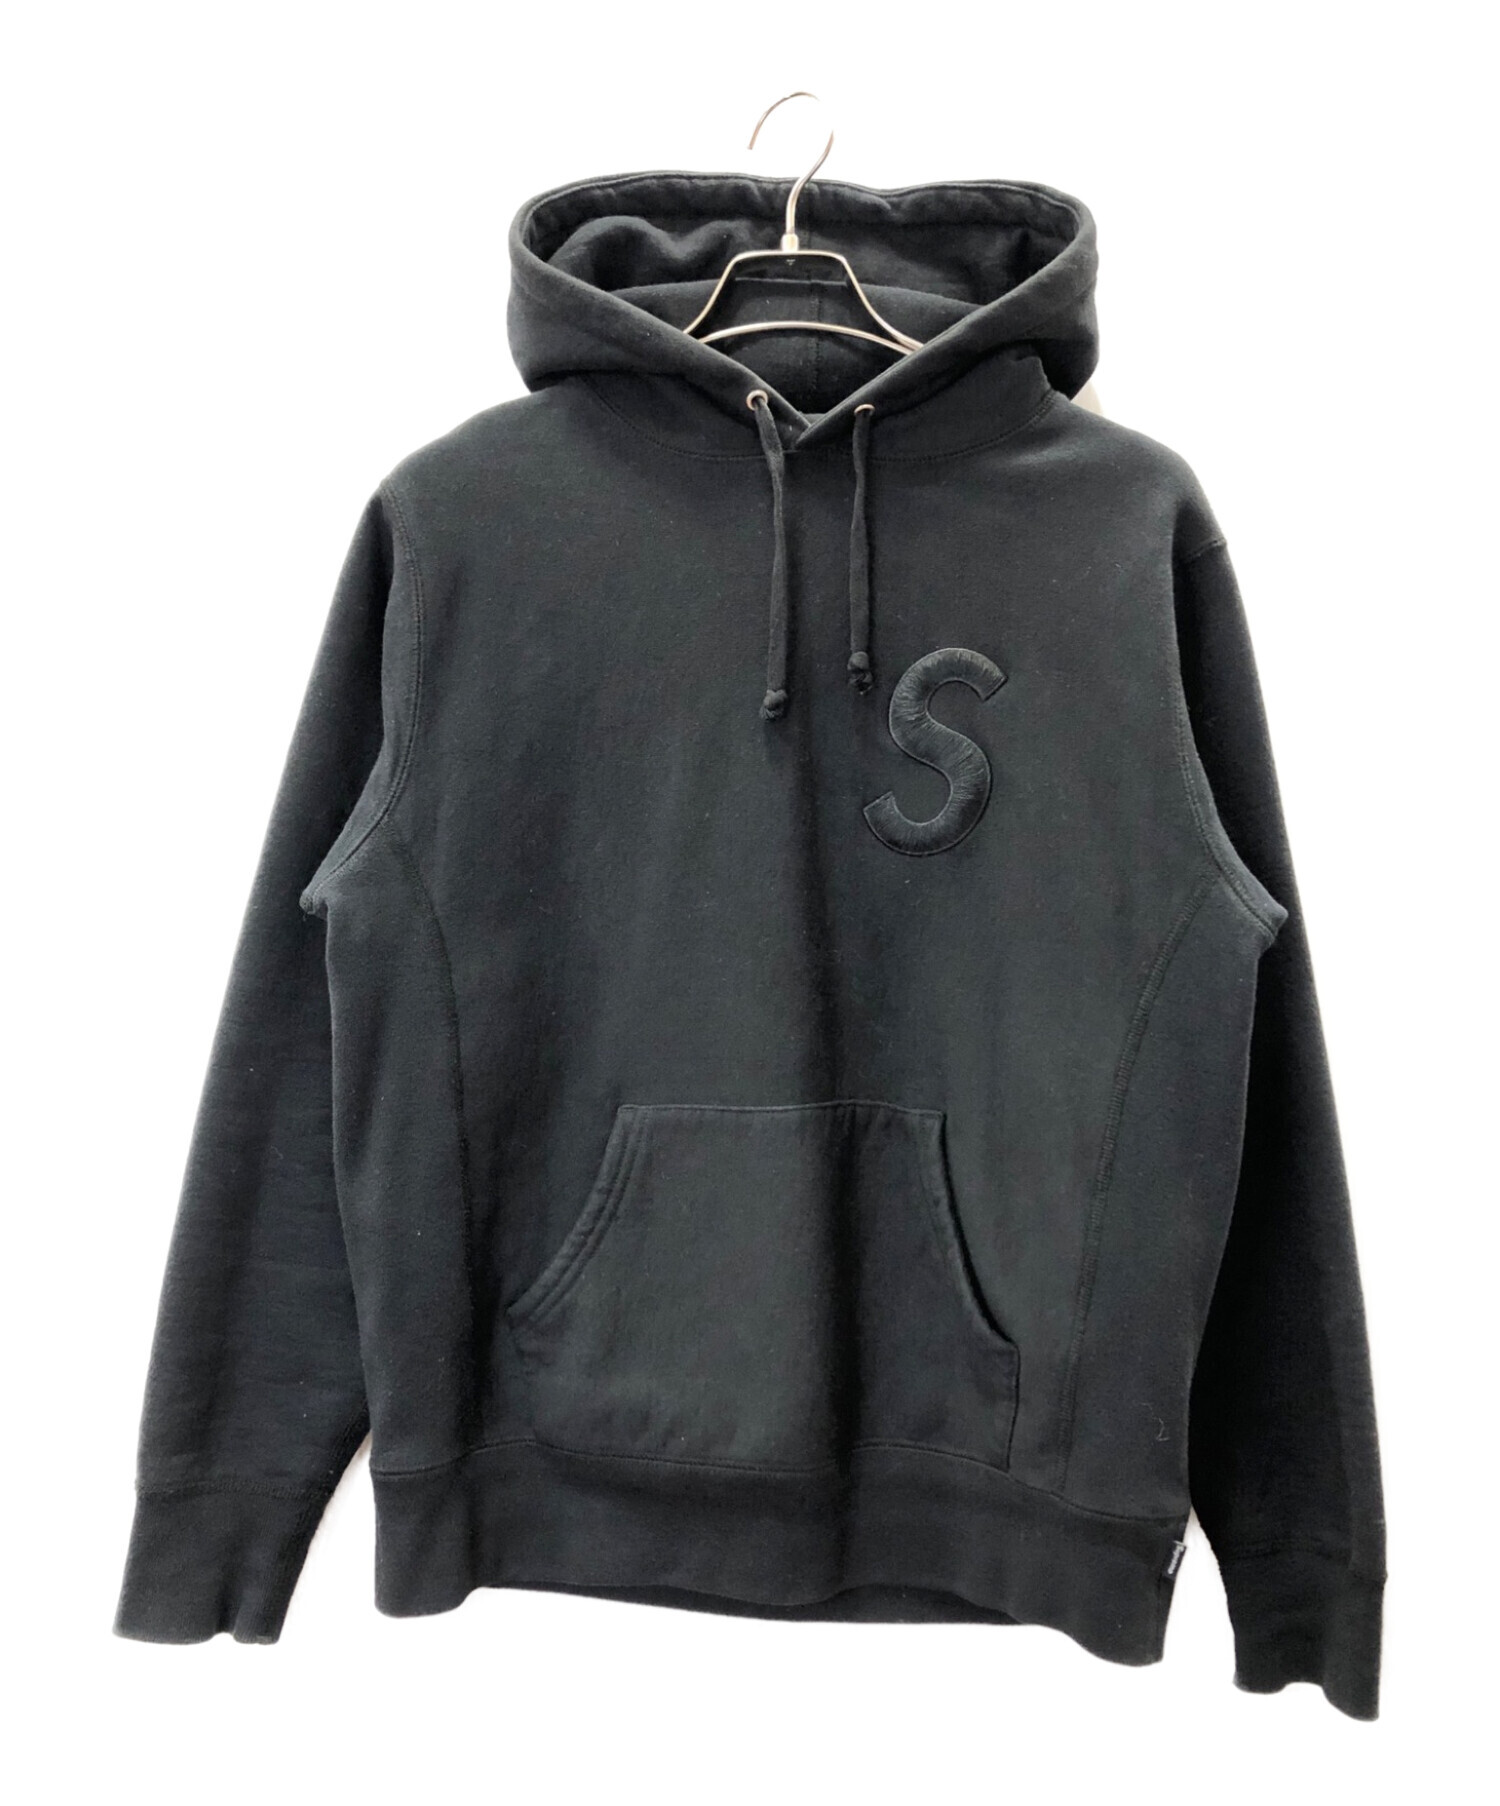 7,990円Supreme Tonal “S” Logo Hooded Sweatshirt